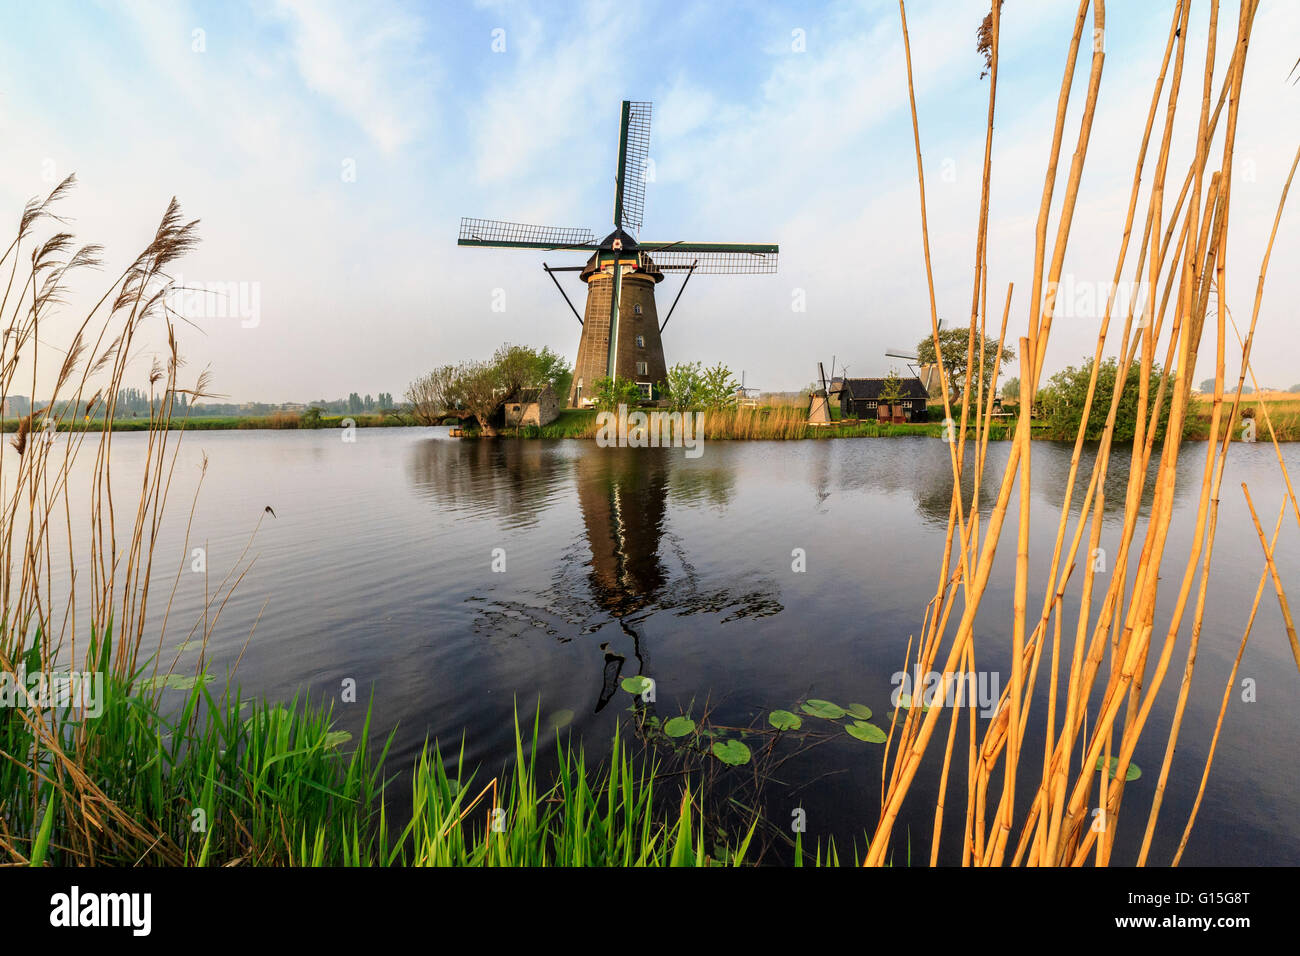 L'herbe verte et roselières les moulins du châssis compte dans le canal Kinderdijk, Rotterdam, Hollande méridionale, Pays-Bas, Europe Banque D'Images